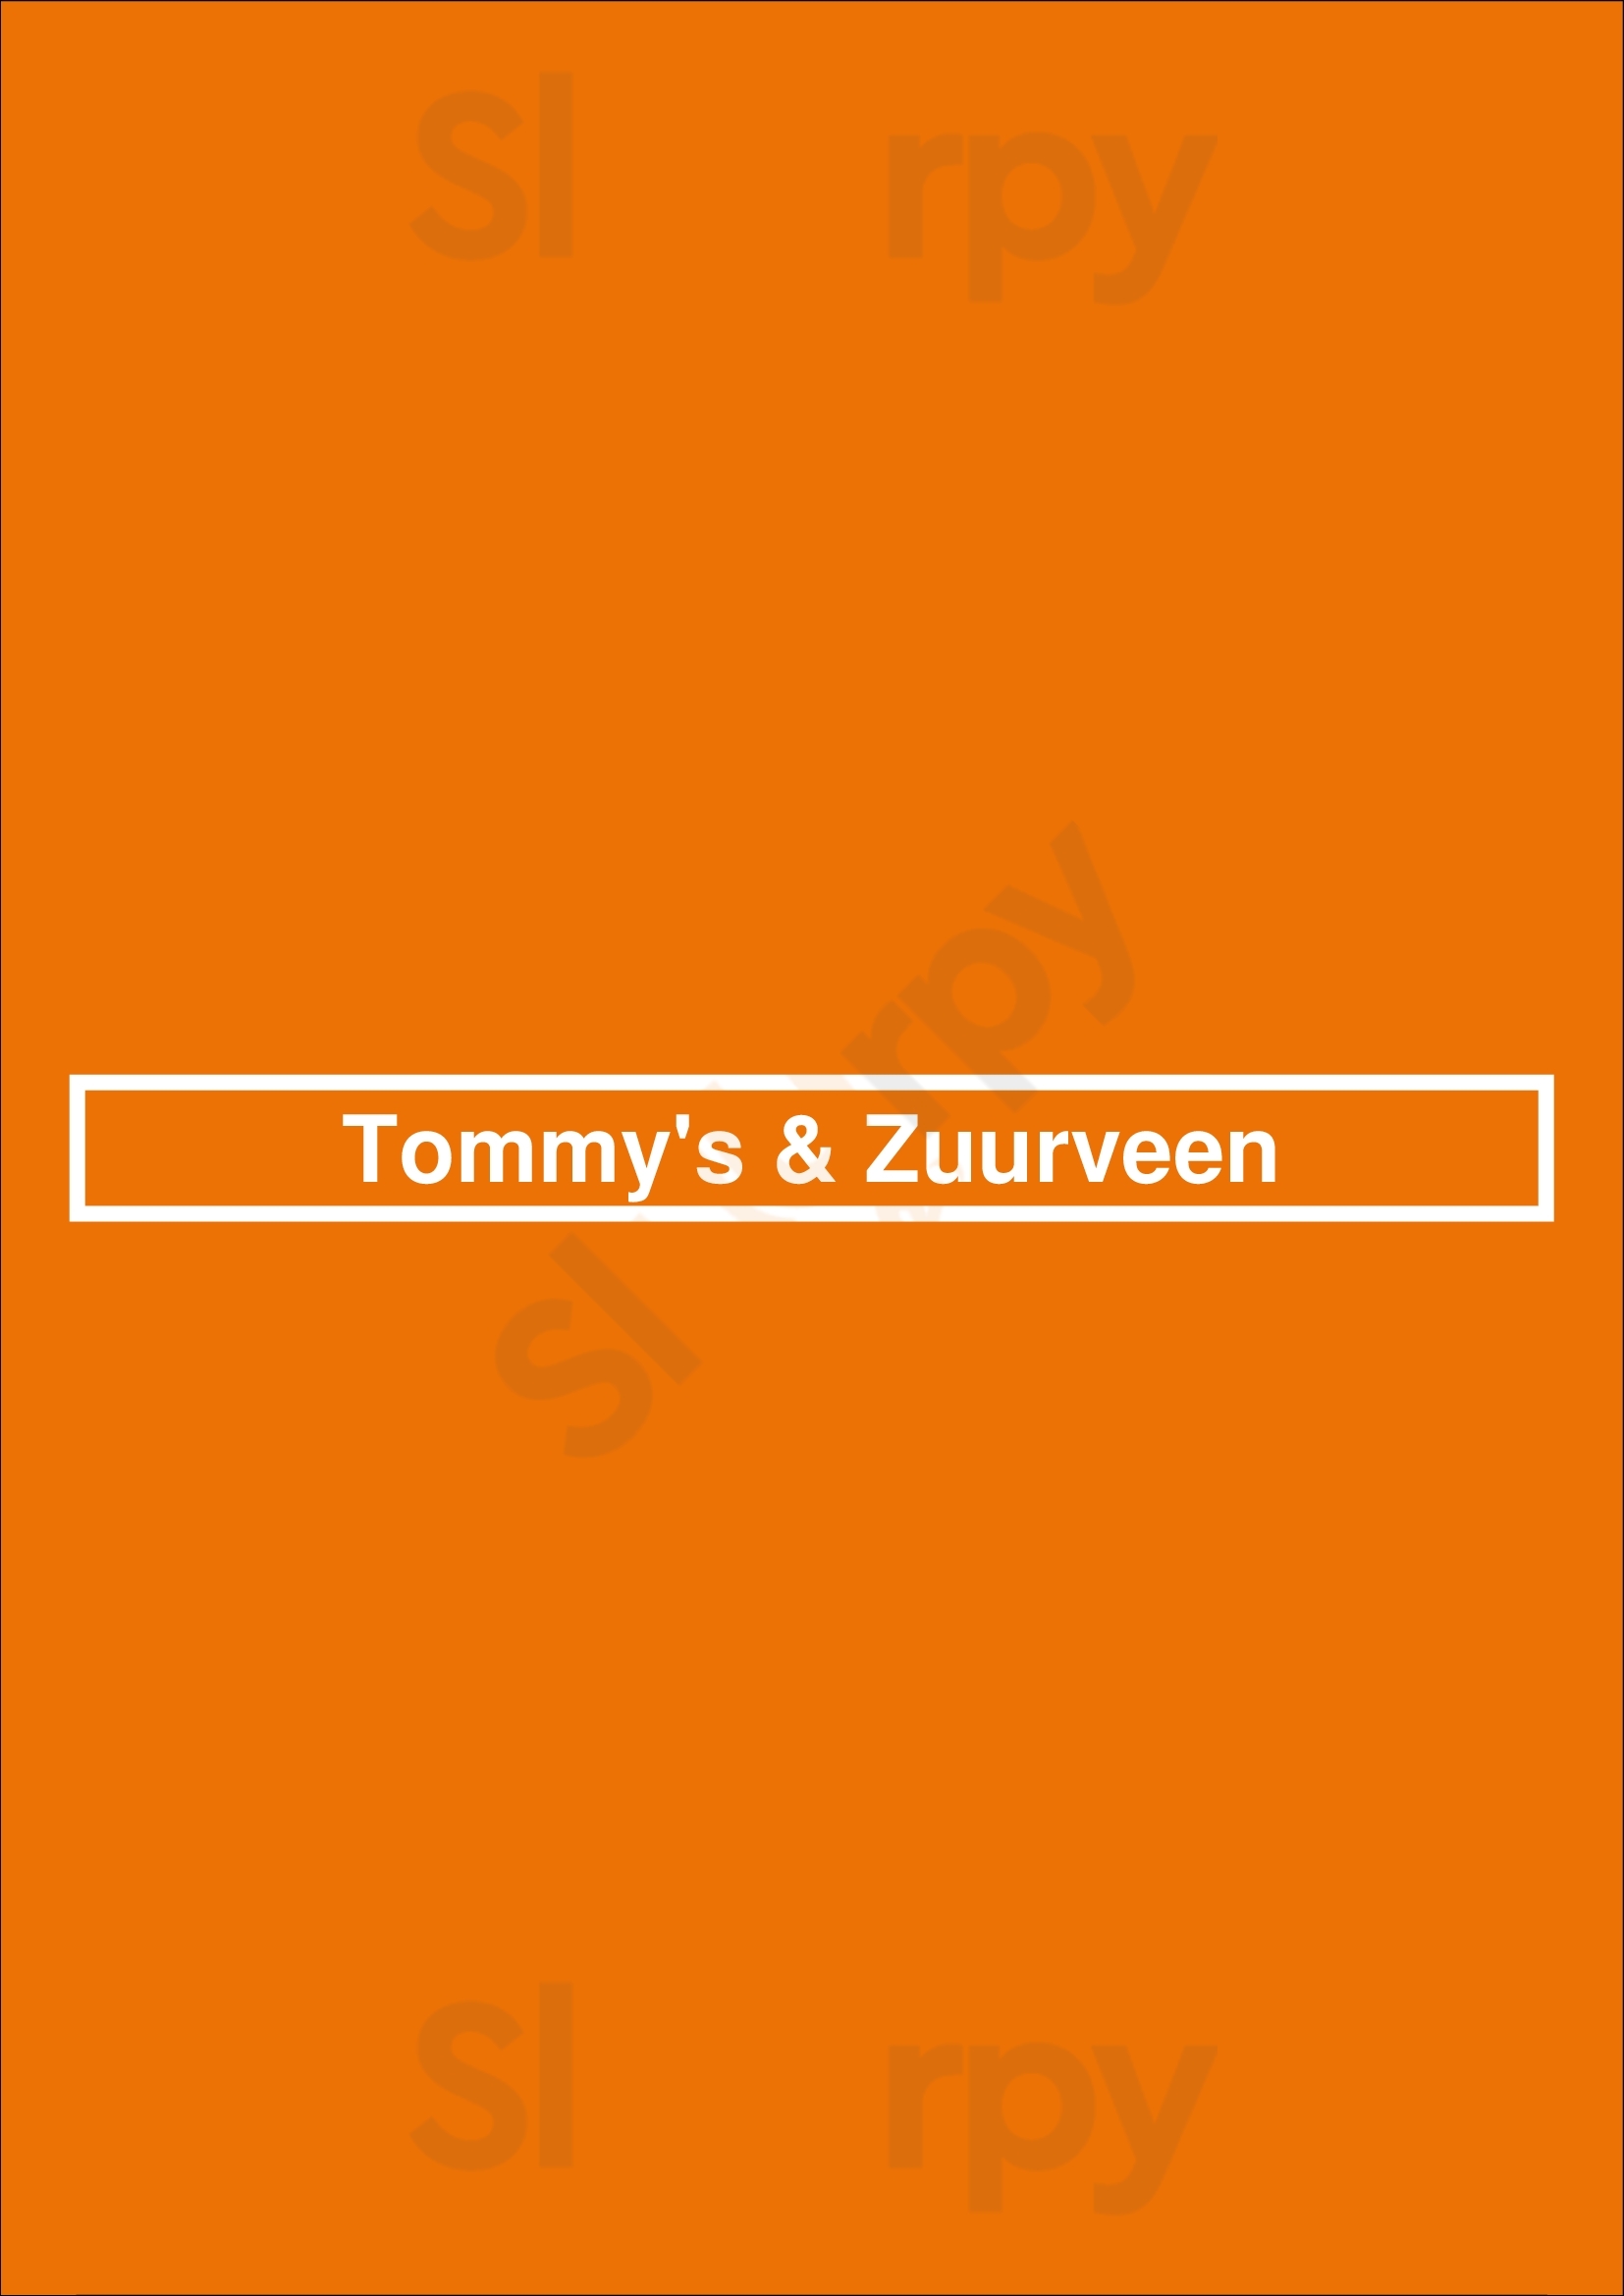 Tommy's & Zuurveen Den Haag Menu - 1